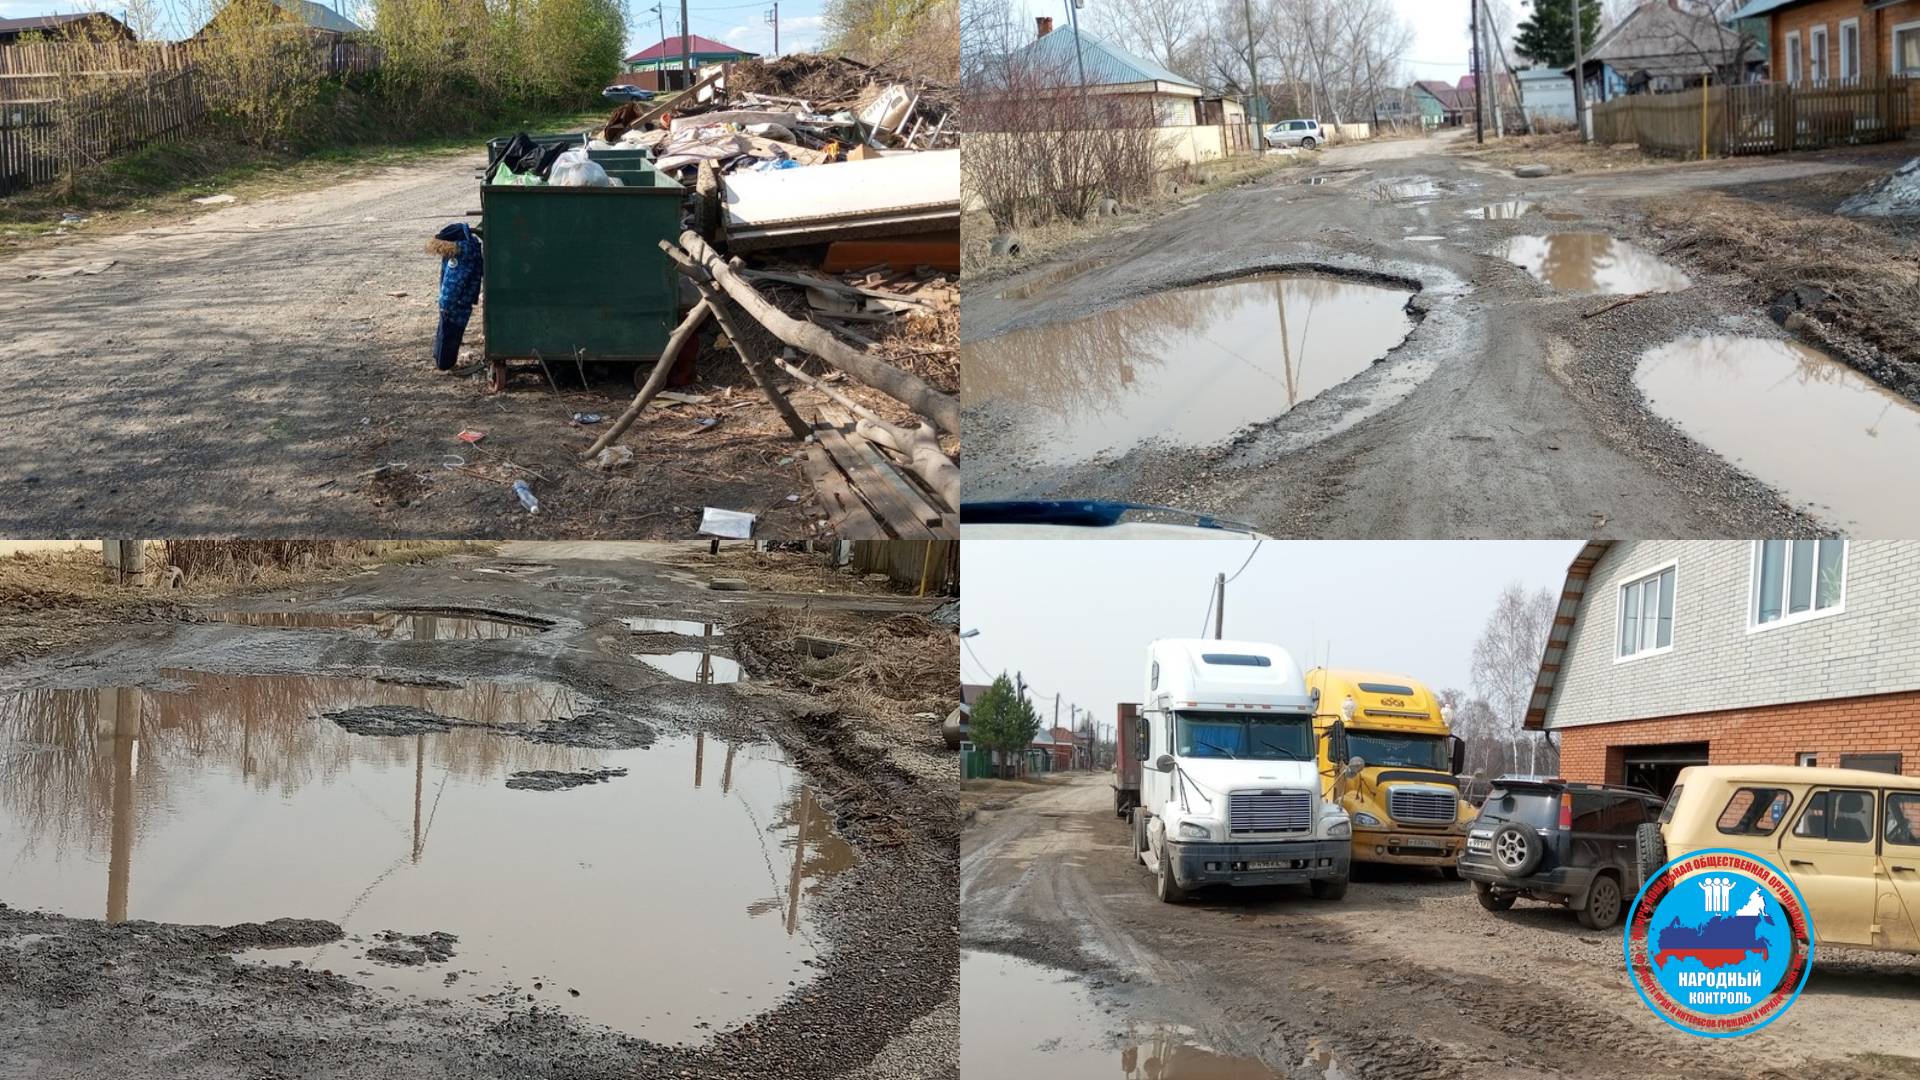 Ужасное состояние дорог, кучи мусора и стоянка большегрузов в селе Дзержинское